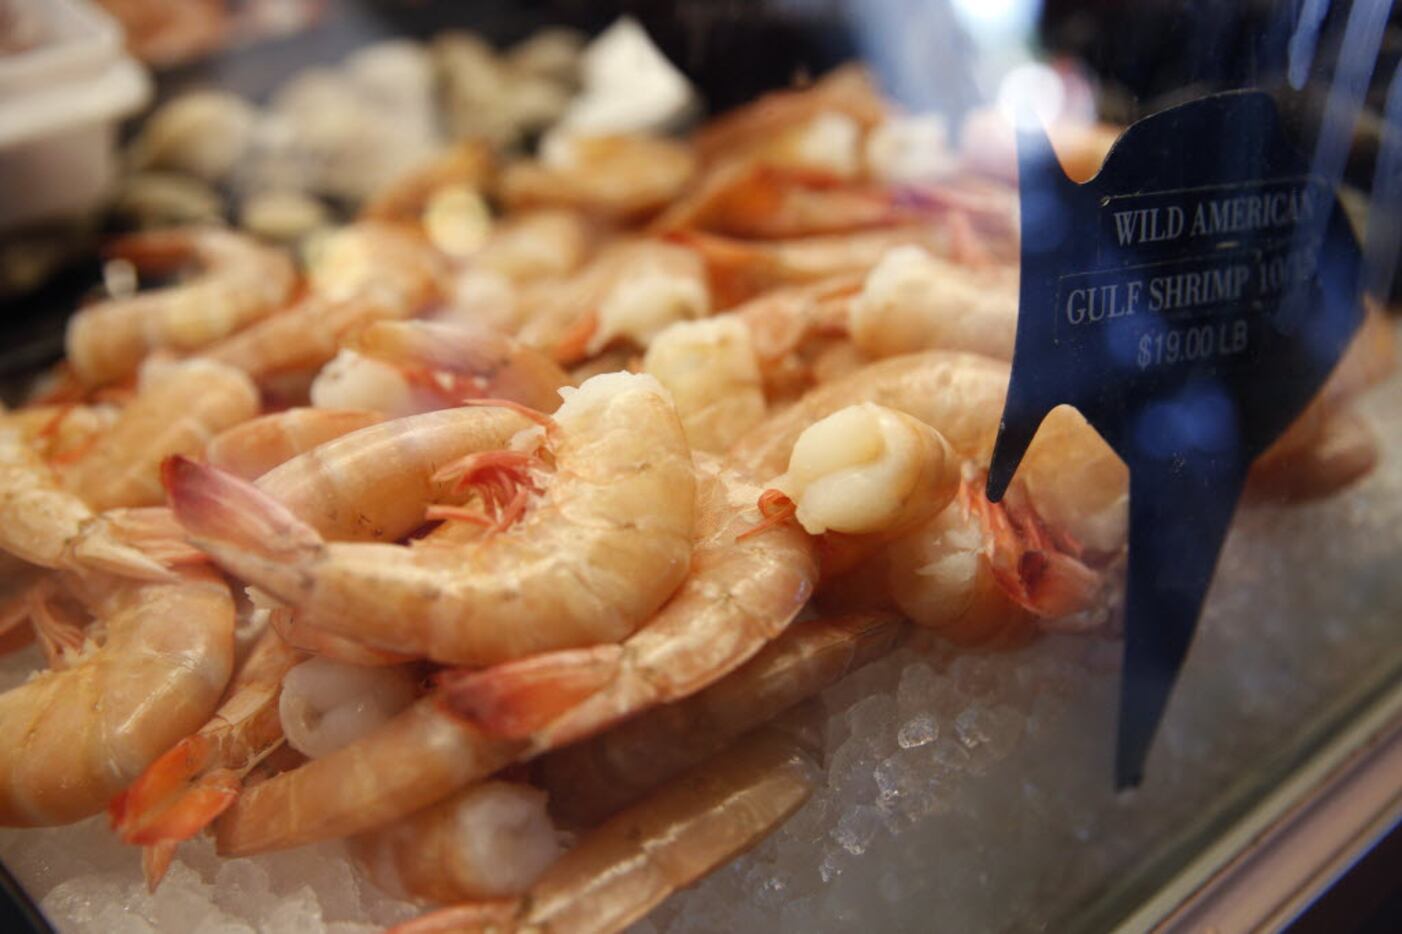 Wild American gulf shrimp for sale at Sea Breeze Fish Market & Grill in Plano.